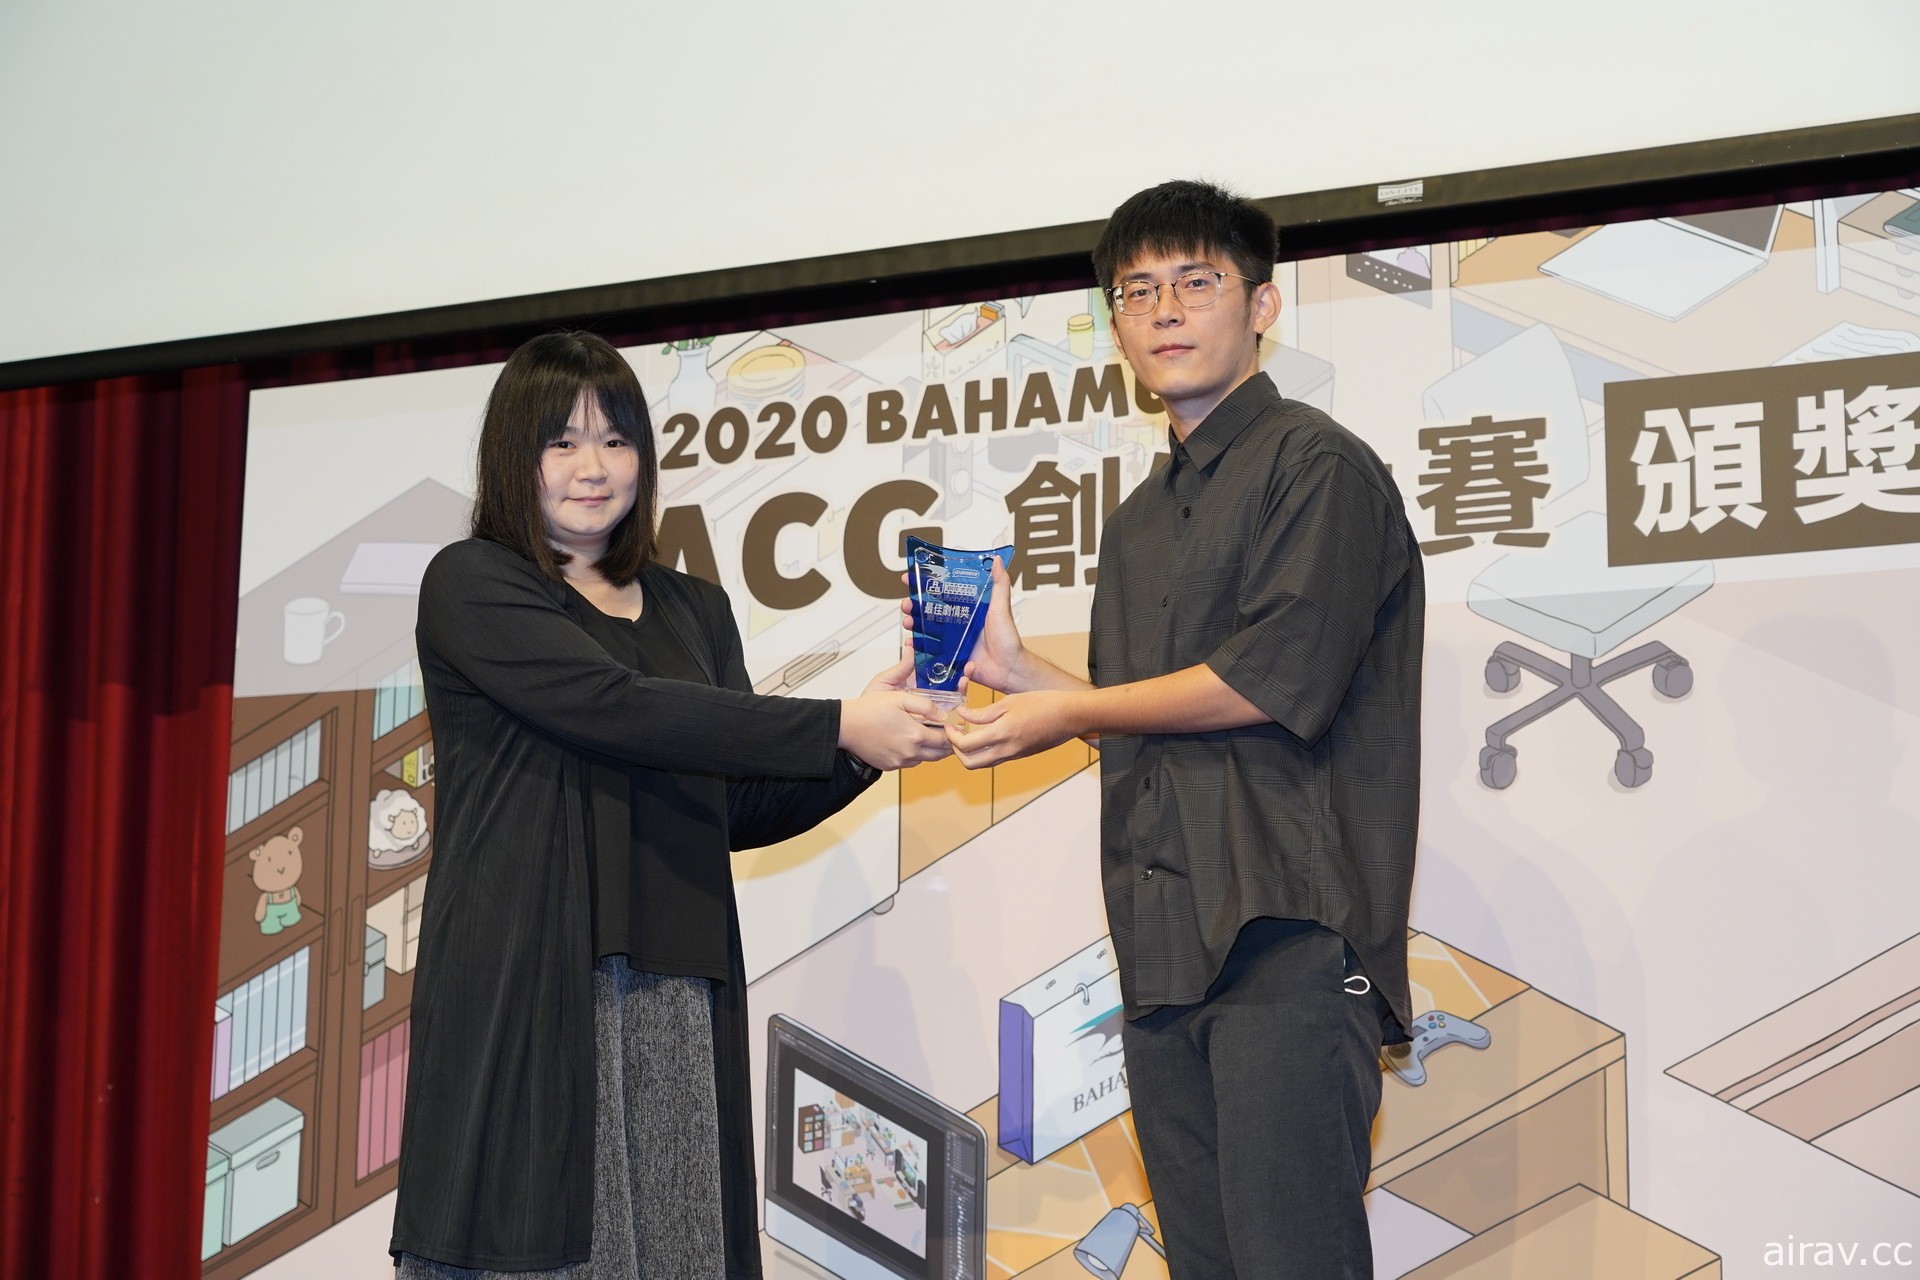 巴哈姆特 2020 ACG 创作大赛“动画组”得奖揭晓 《上吧！鱼 - Go Go Fish!》夺金赏